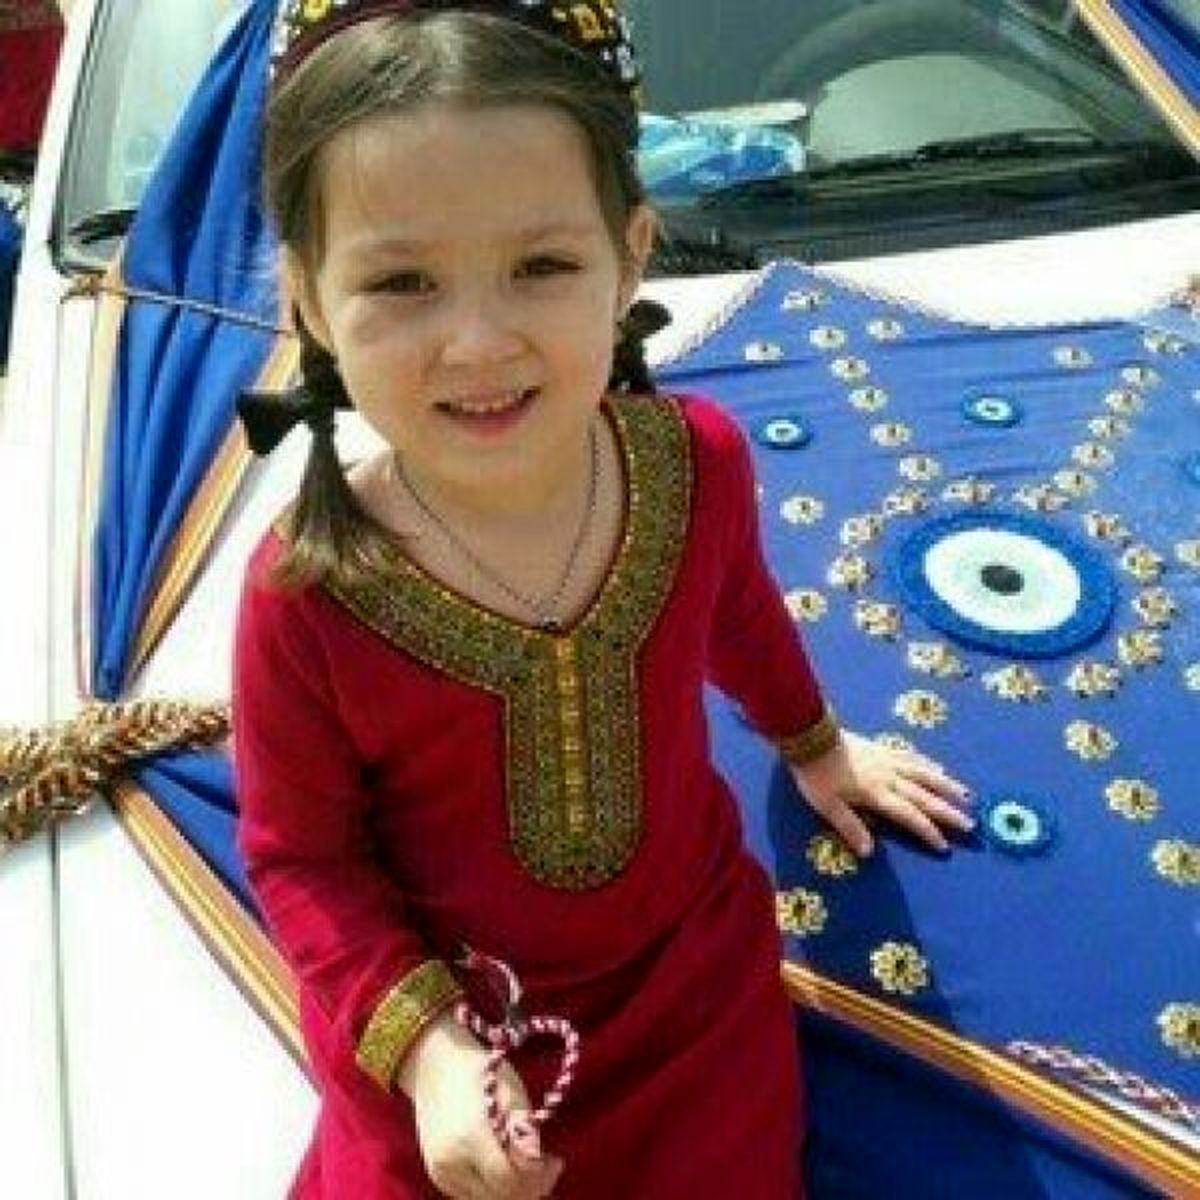 دختر بچه 5 ساله آق قلایی به قتل رسيد/قاتل دستگیر شد